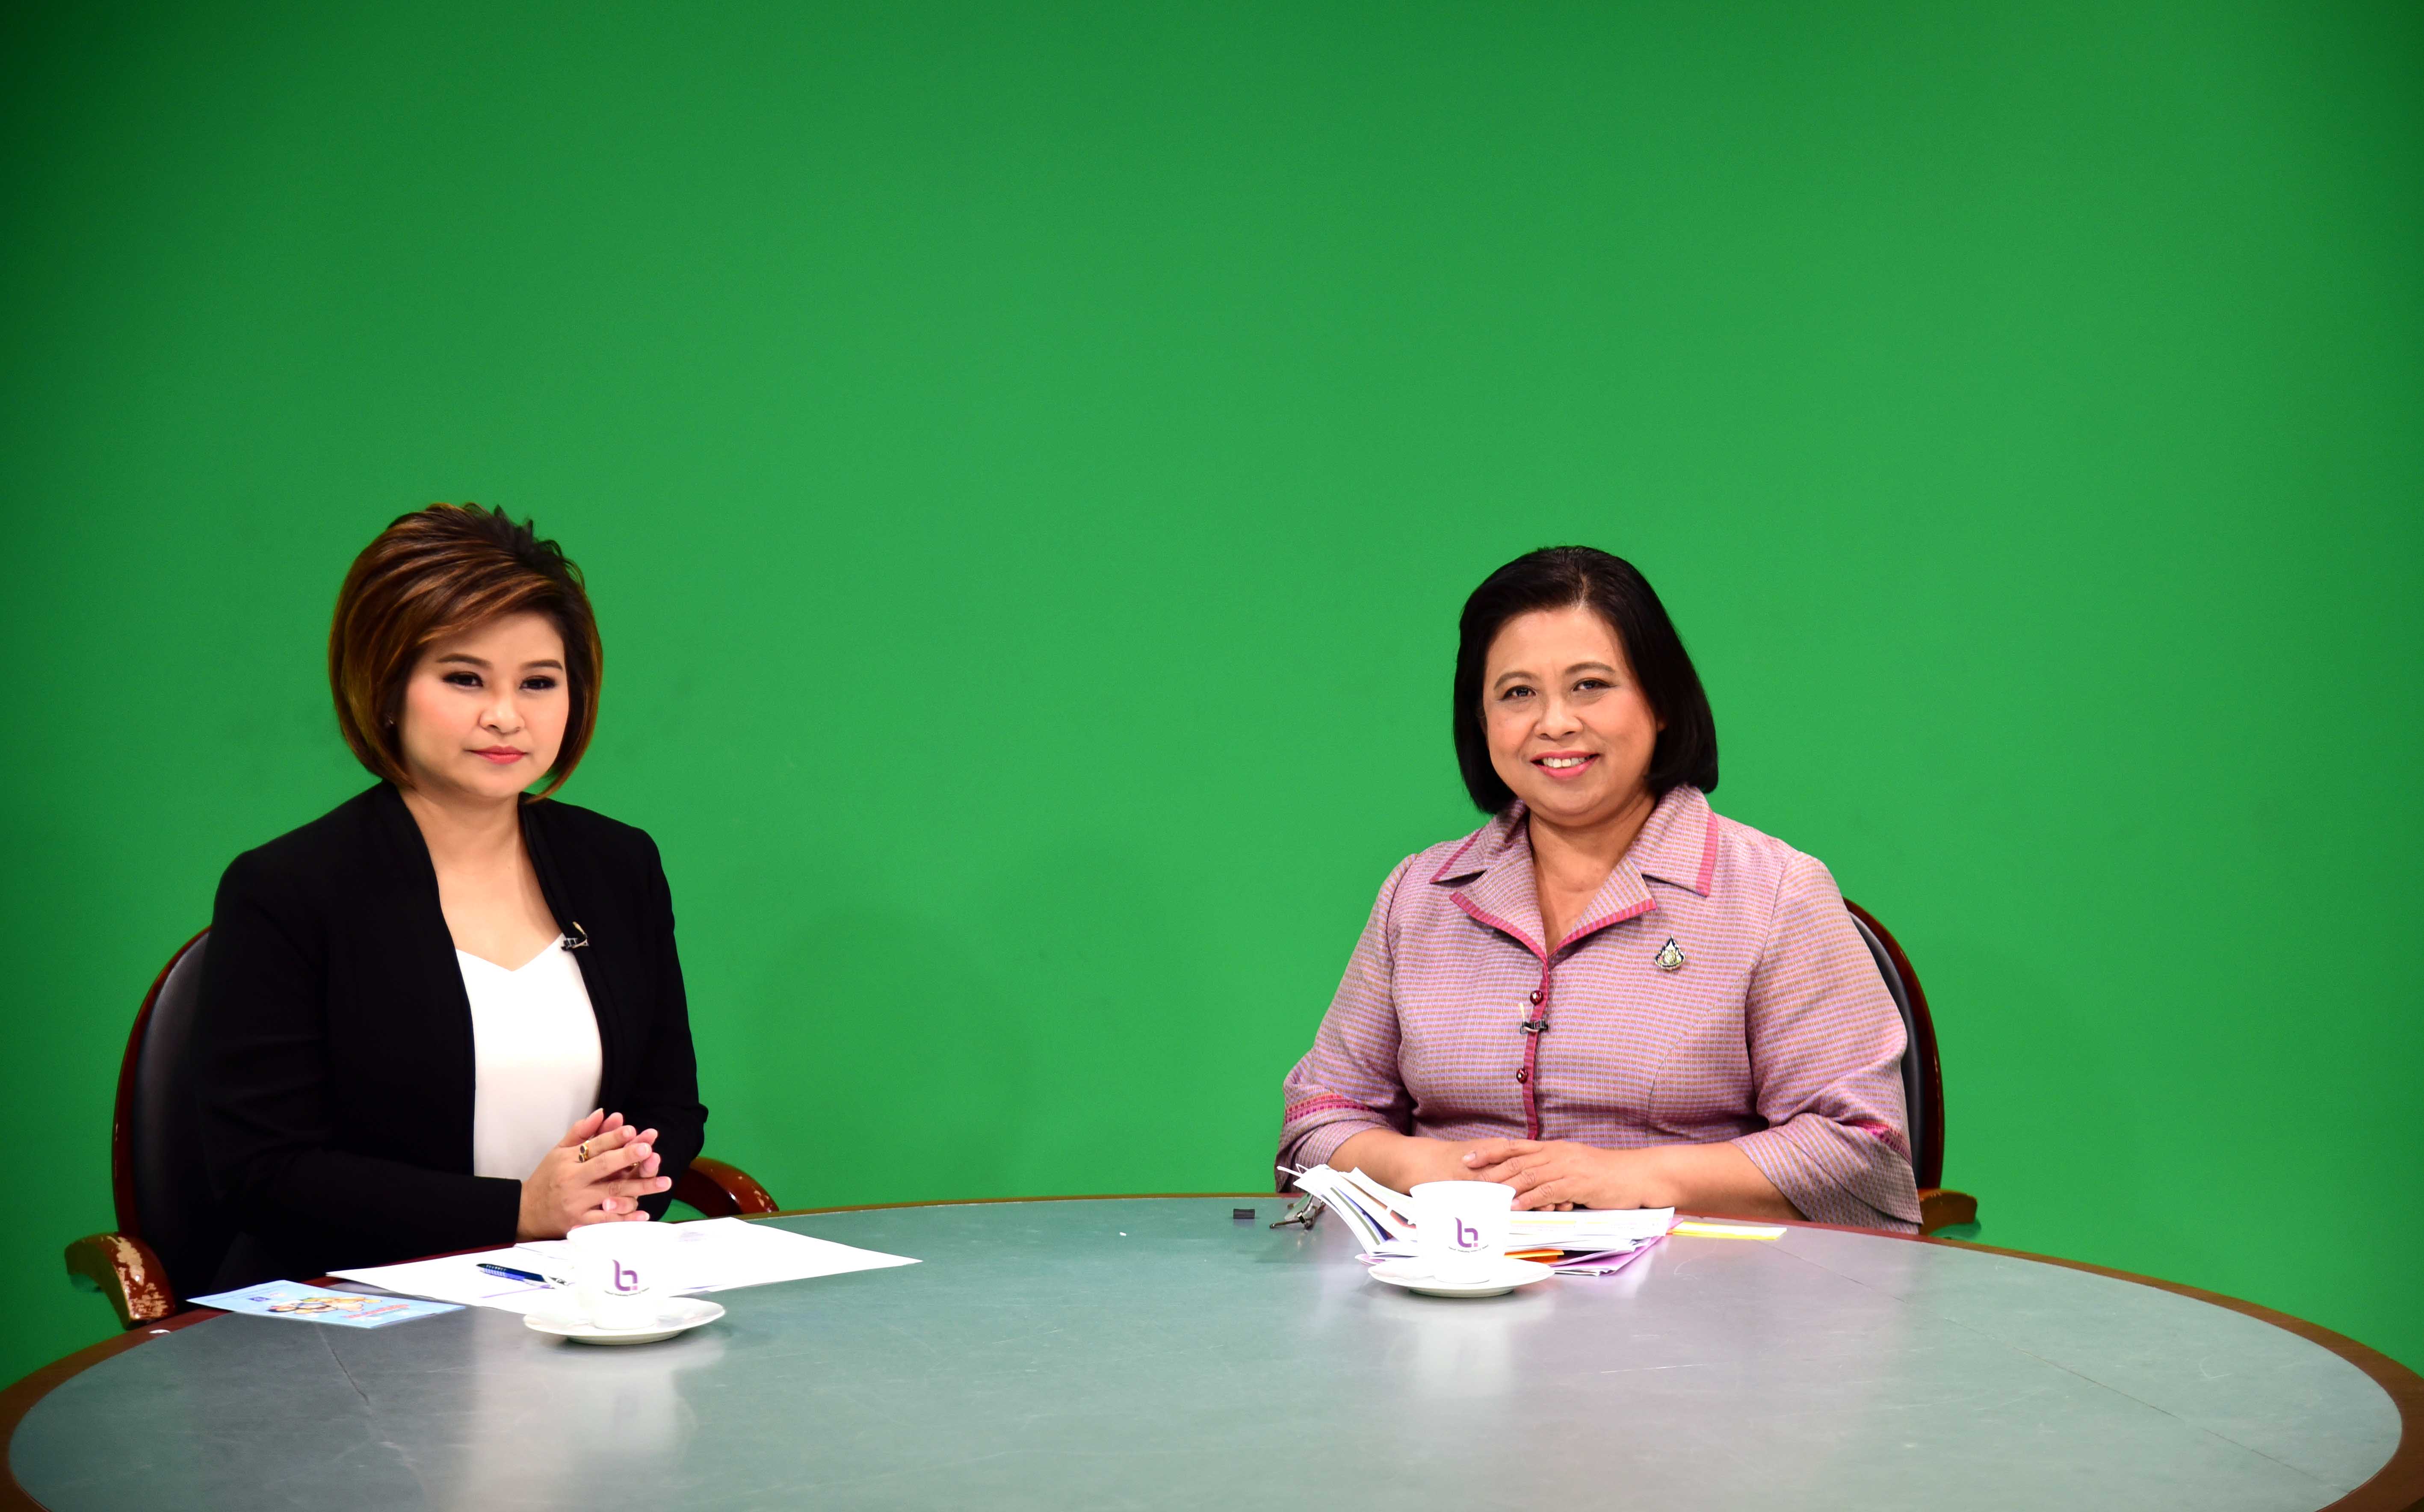 อผส. ร่วมบันทึกเทปรายการ เคลียร์คัดชัดเจน ทางสถานีวิทยุโทรทัศน์แห่งประเทศไทย NBT 